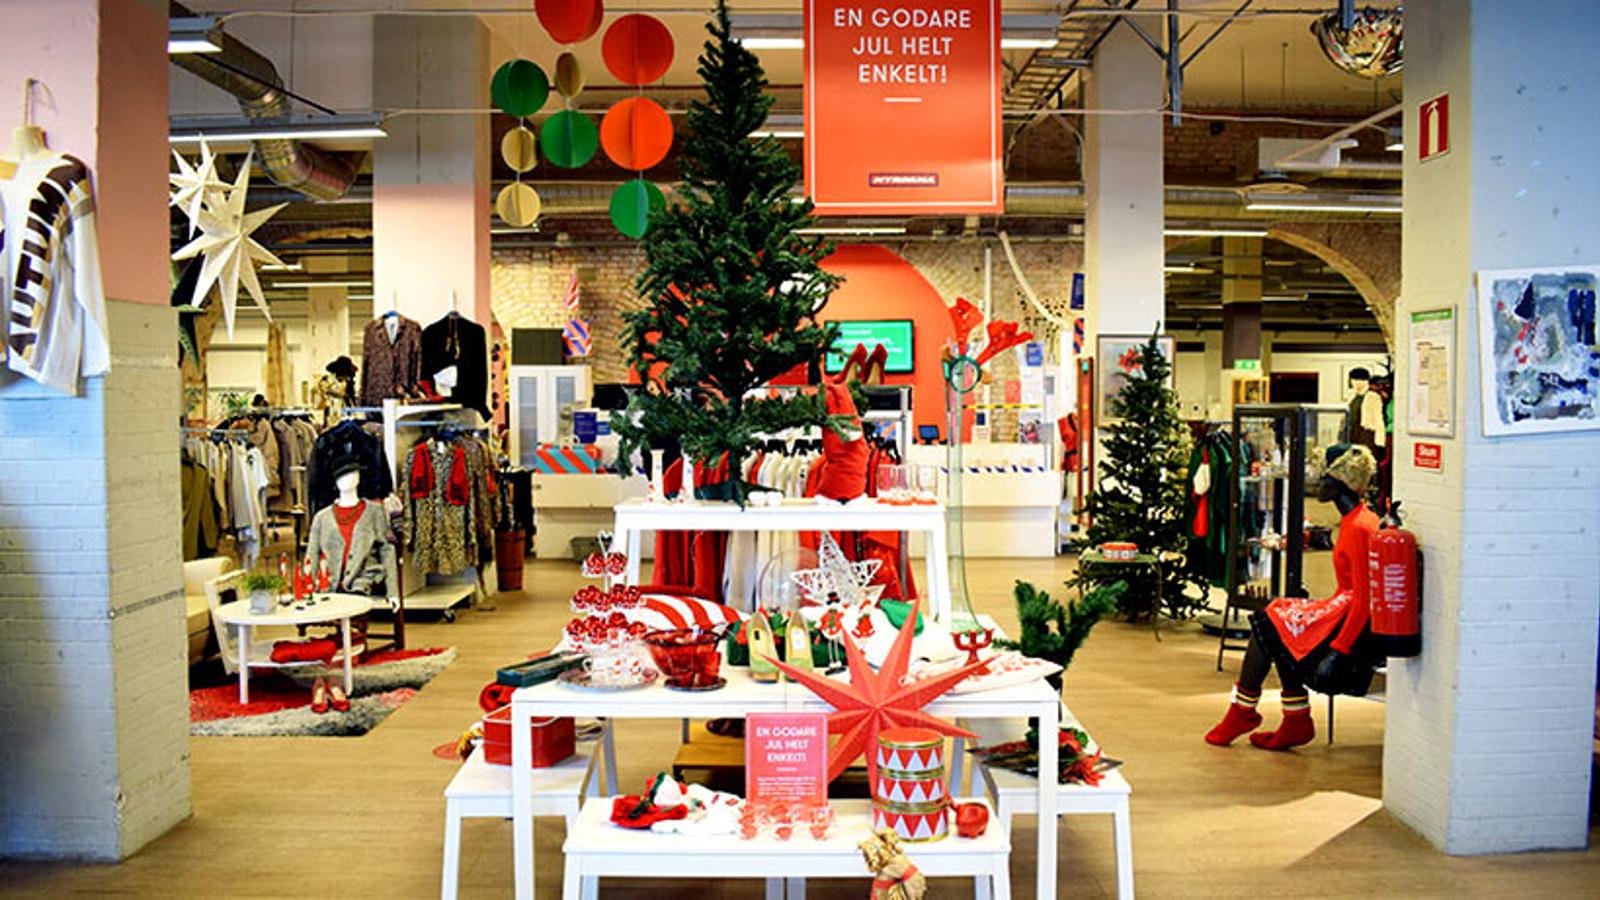 Julskyltning i Myrornas butik i Ystad.